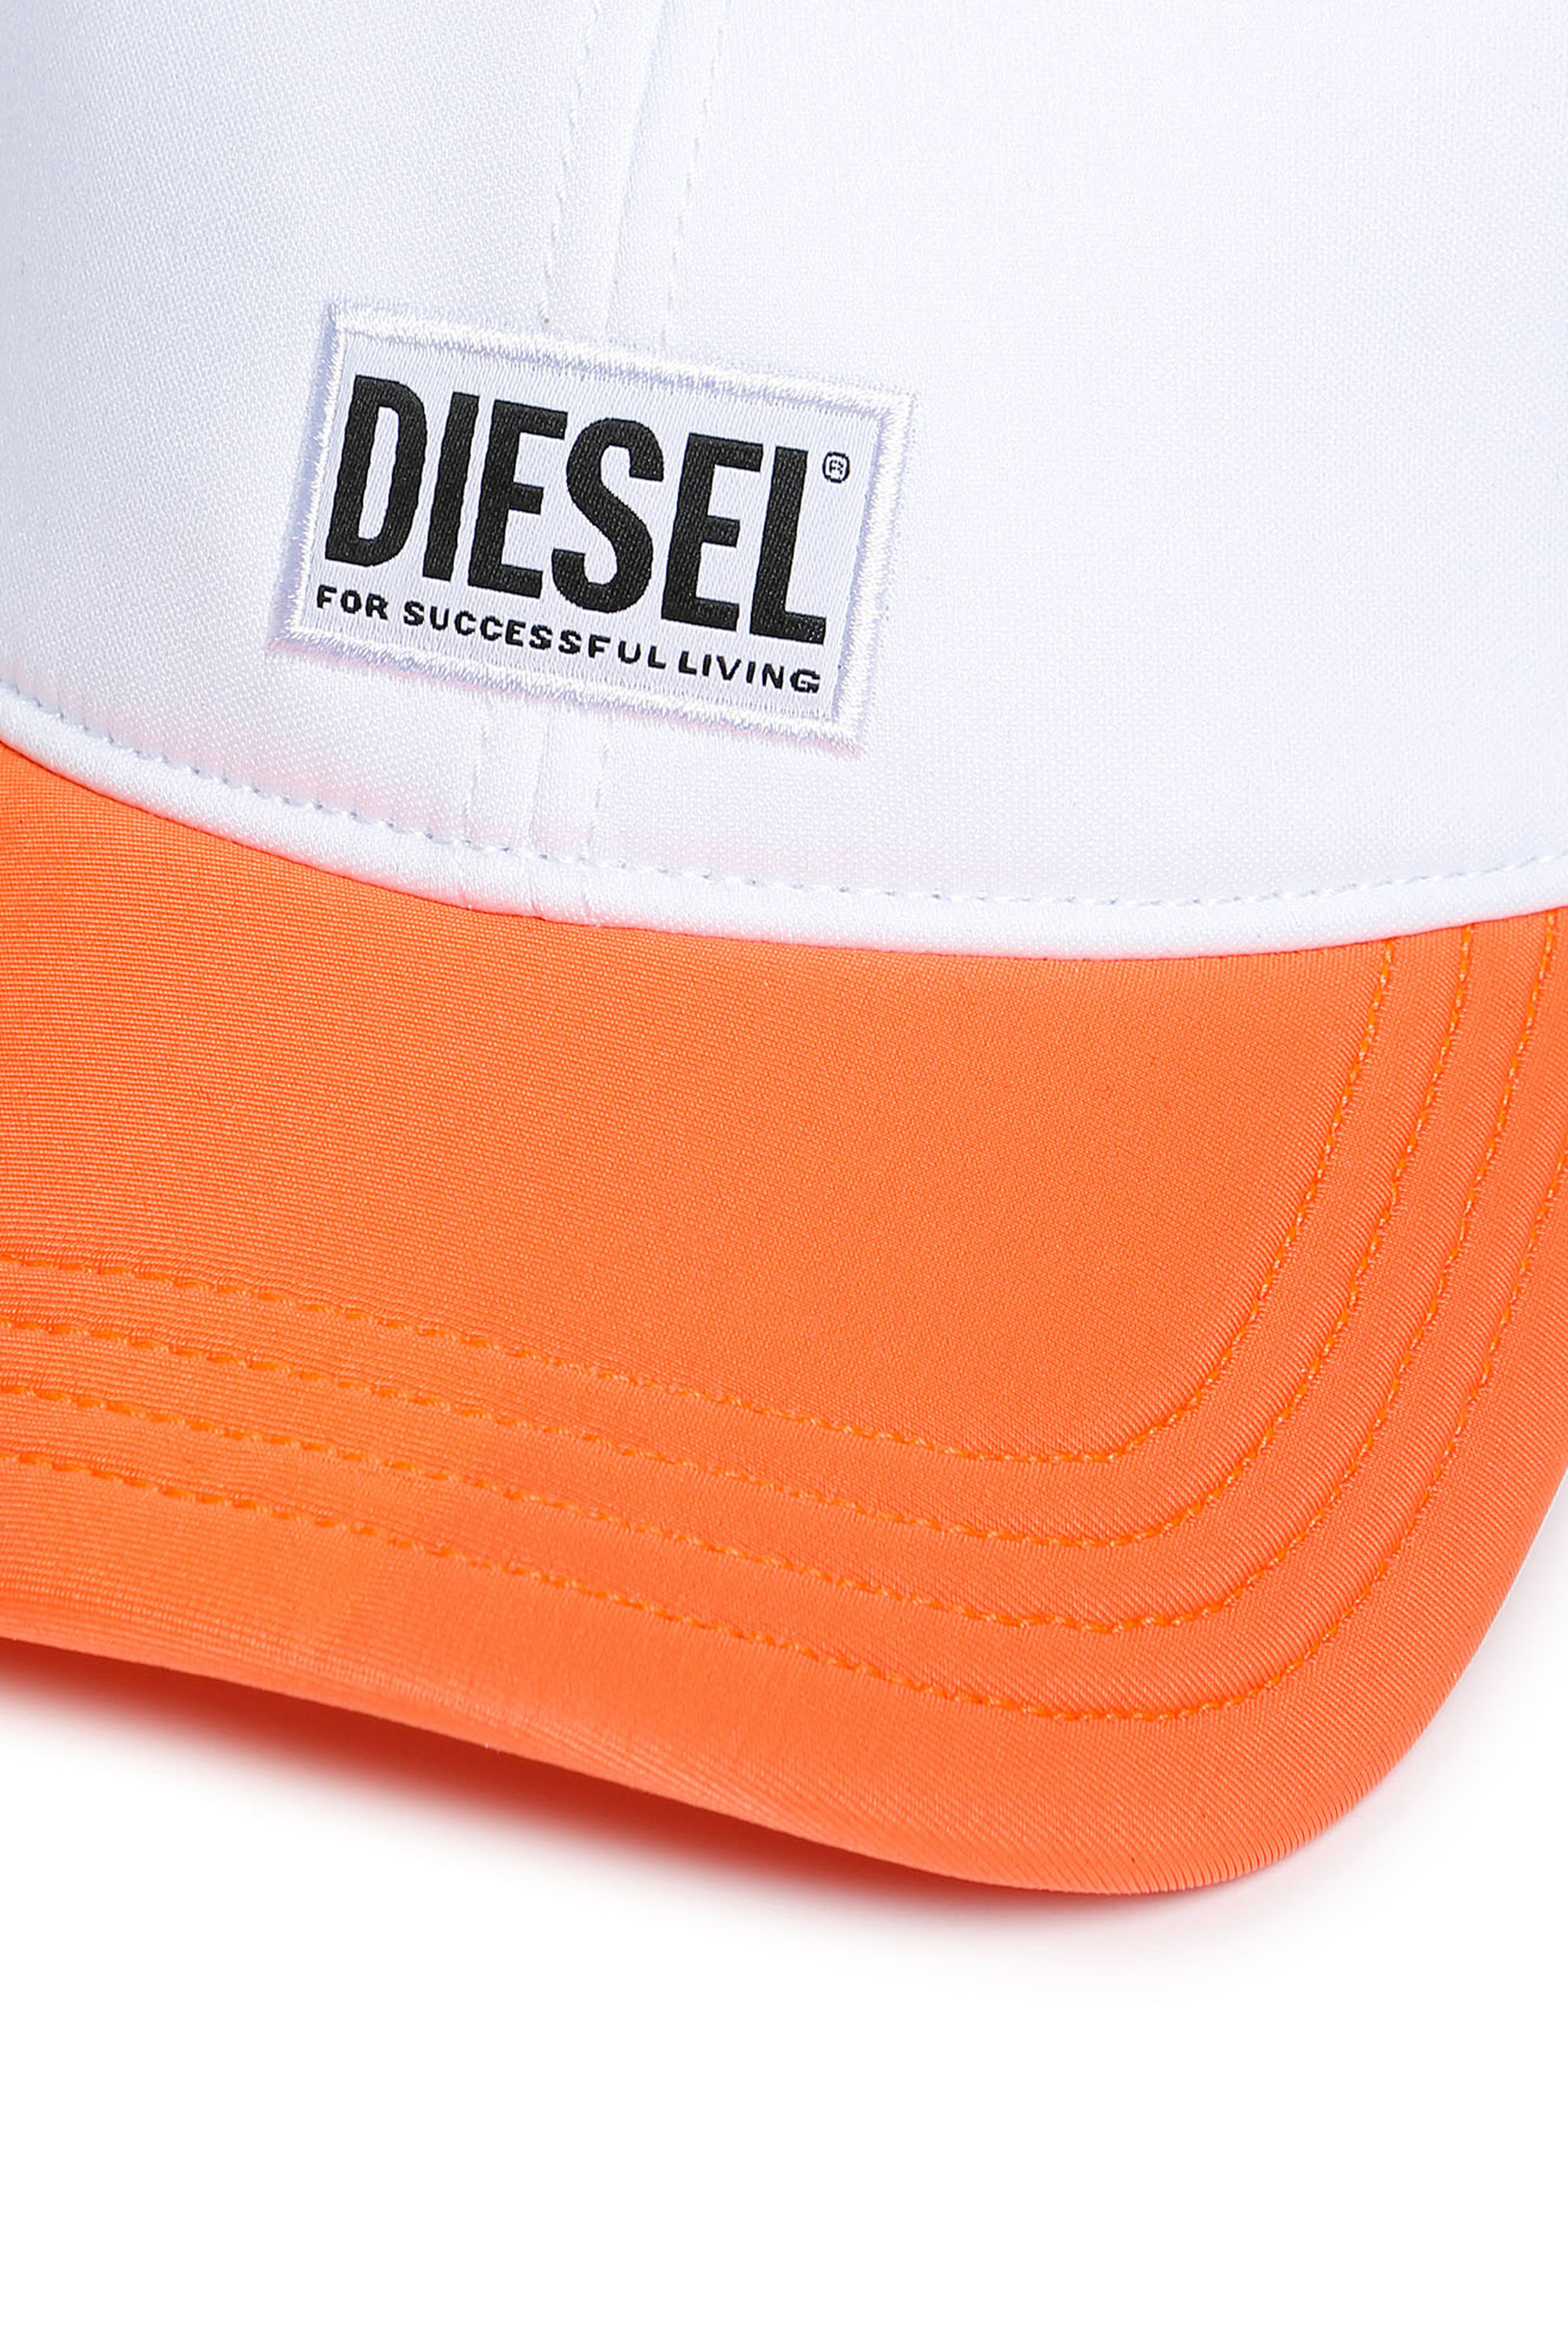 Diesel - FDURBO, White/Orange - Image 3